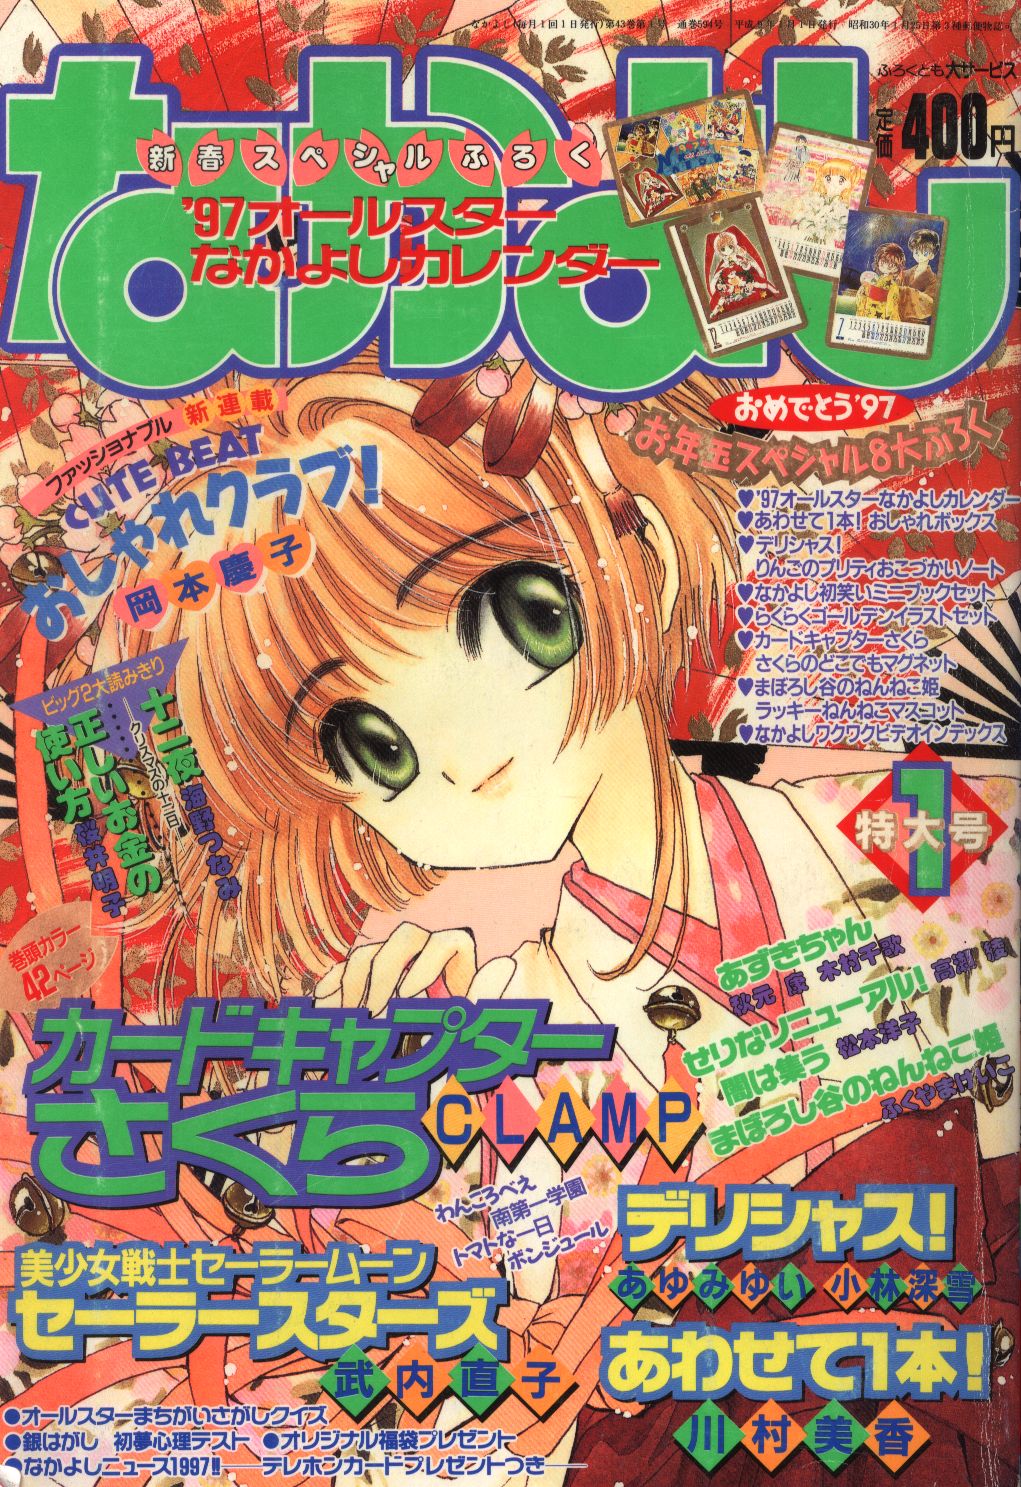 雑誌『なかよし』1997年 武内直子先生、コミックス未収録作品掲載 